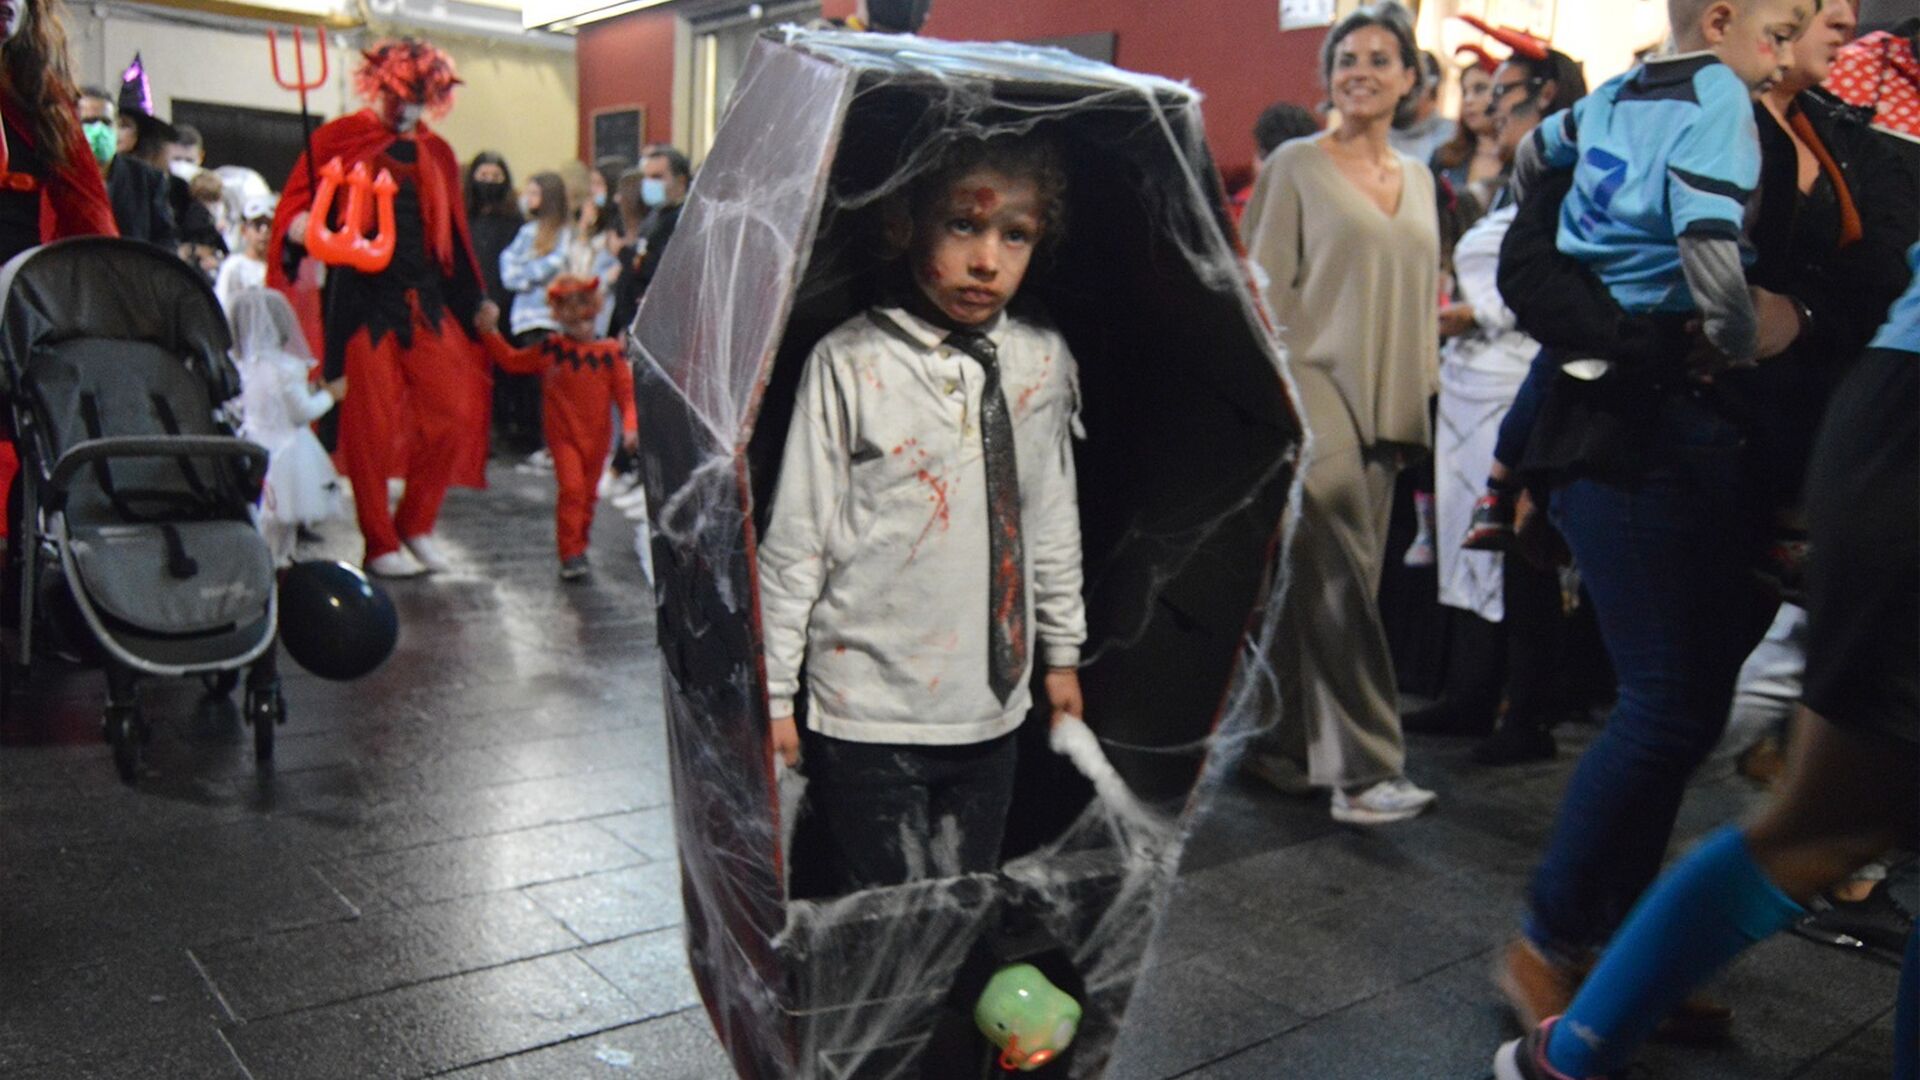 Im&aacute;genes de Halloween en El Puerto